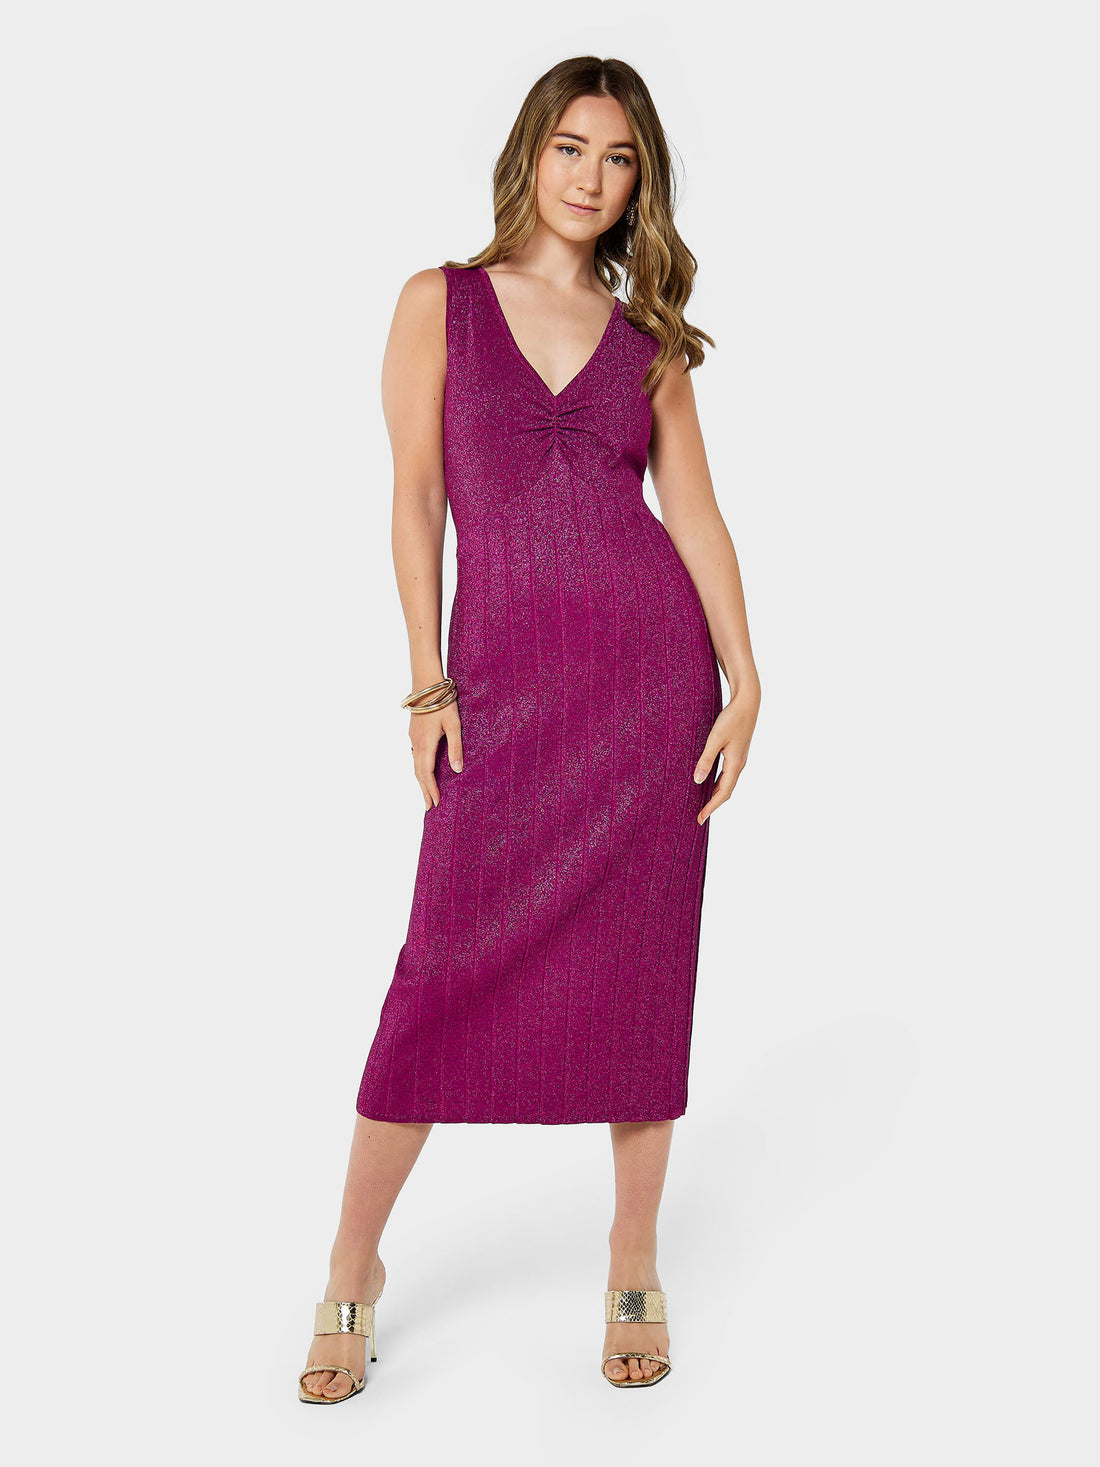 Witney Sparkle Dress | GWD Fashion